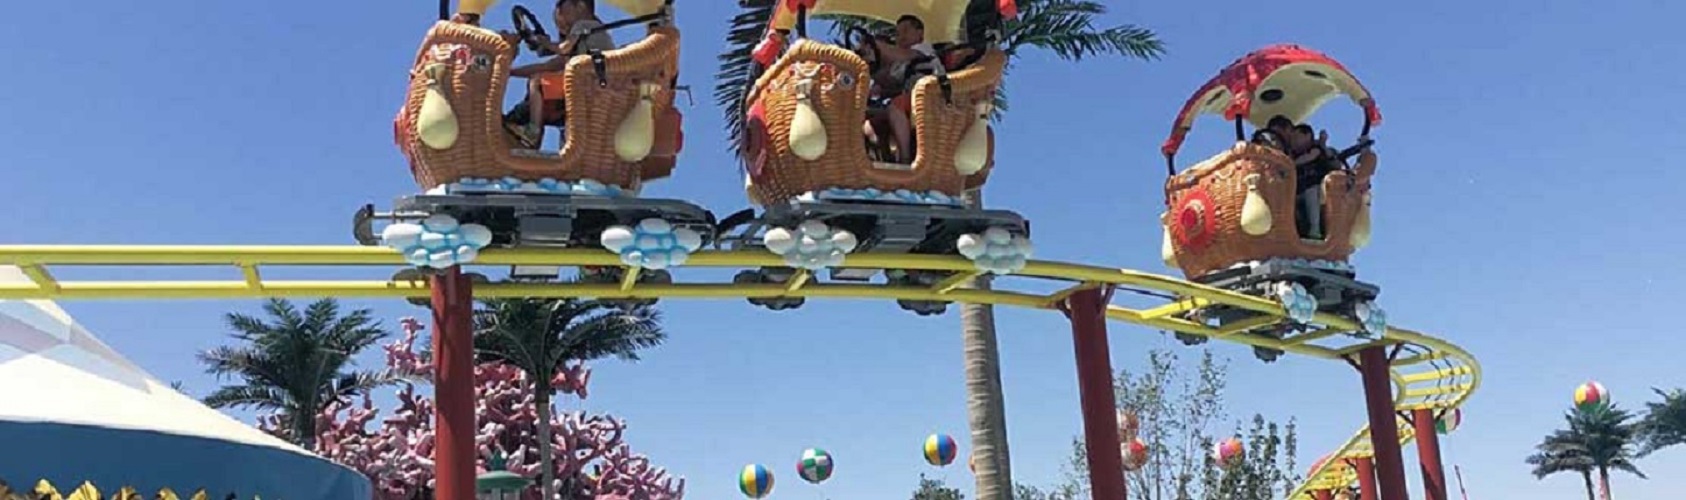 C&Q Amusement Park Track Rides